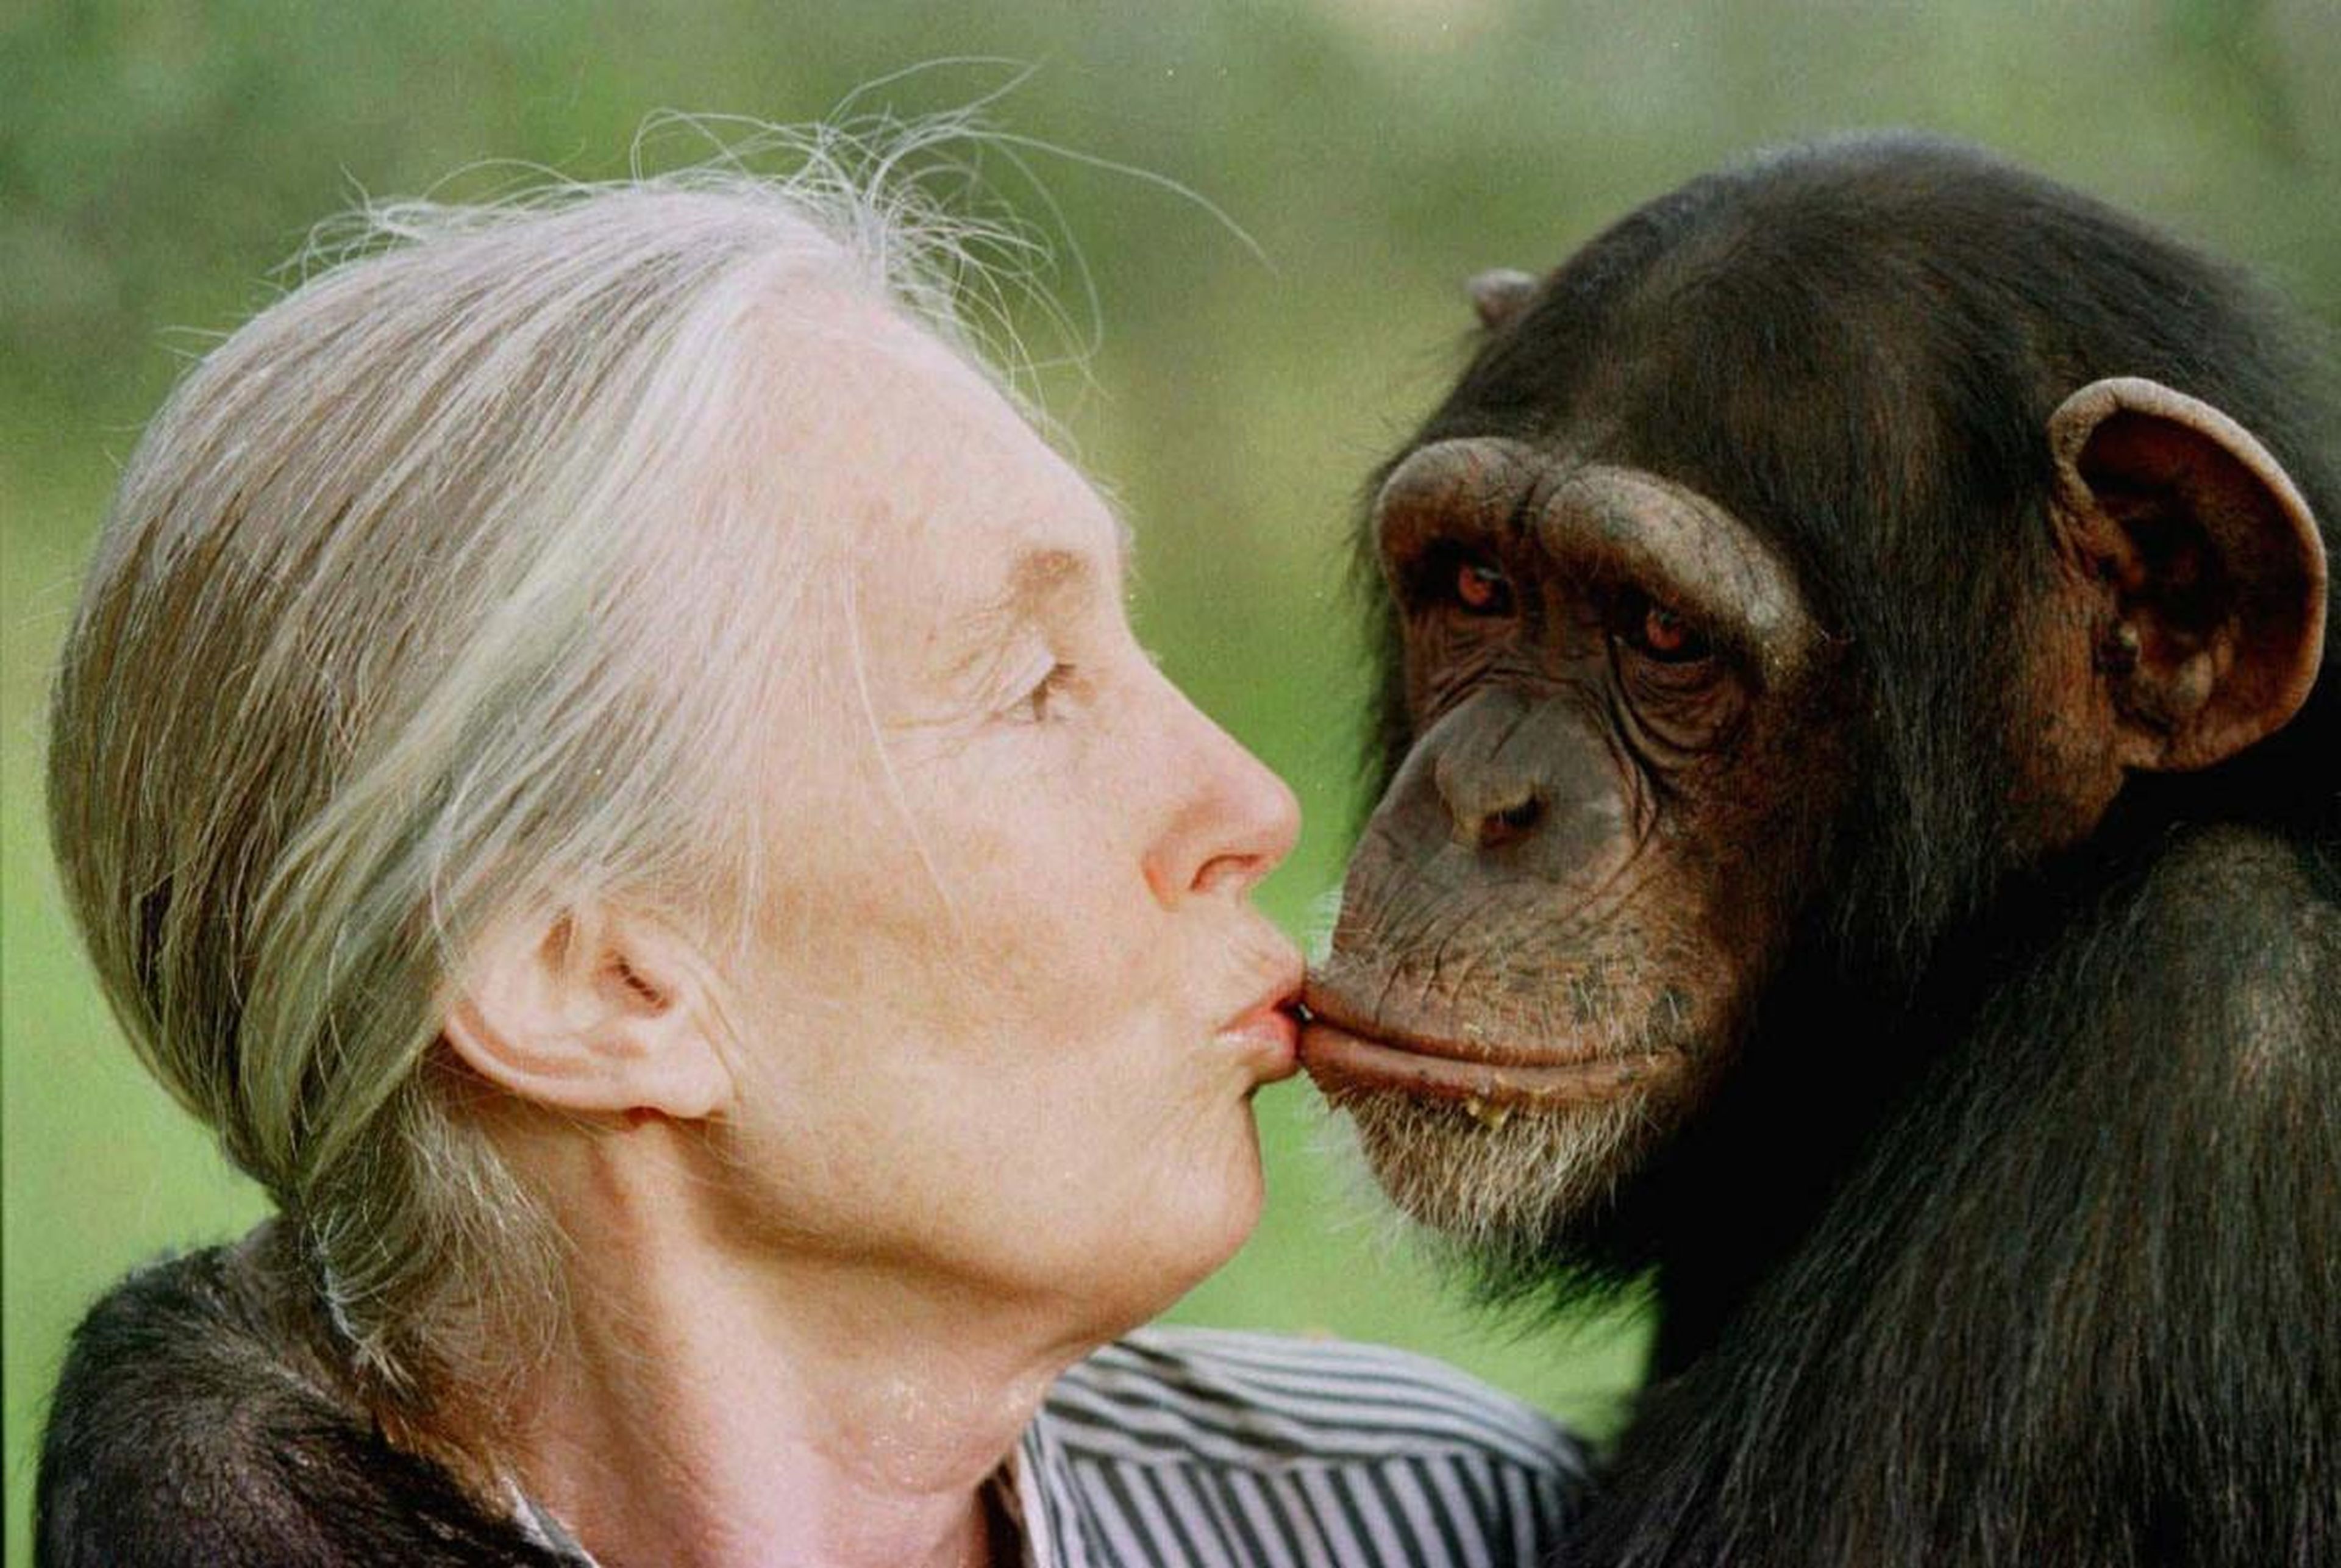 La experta en chimpancés Jane Goodall con un chimpancé que puede estar o no involucrado en la foto.